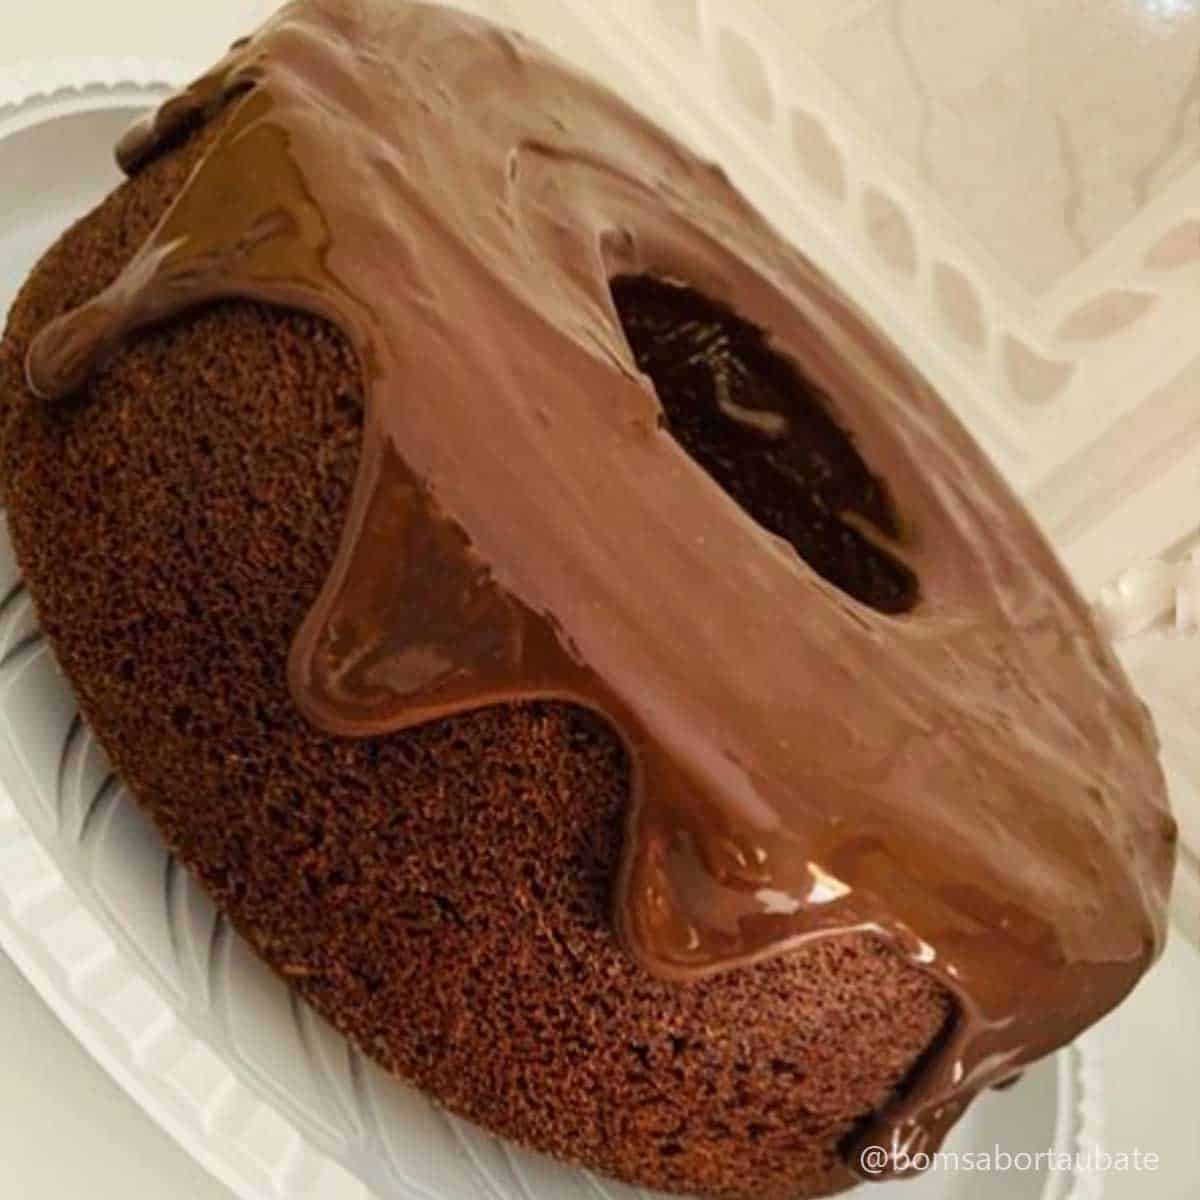 bolo de chocolate com cobertura de chocolate